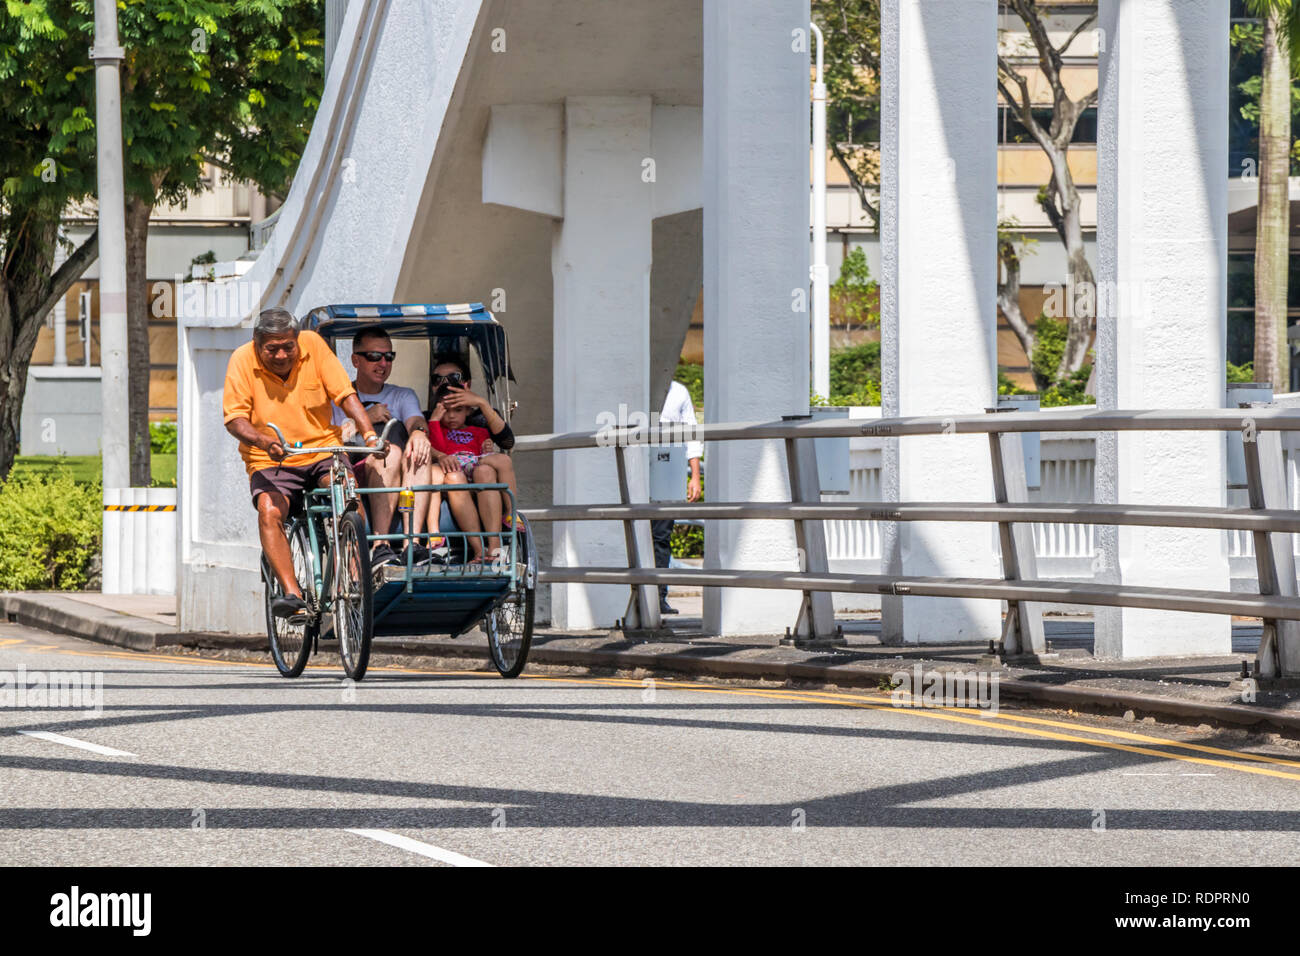 Singapour - 26 décembre 2018 : un cycle rickshaw avec passagers fait son chemin sur le pont d'Elgin. Cyclos sont encore utilisés par les touristes. Banque D'Images